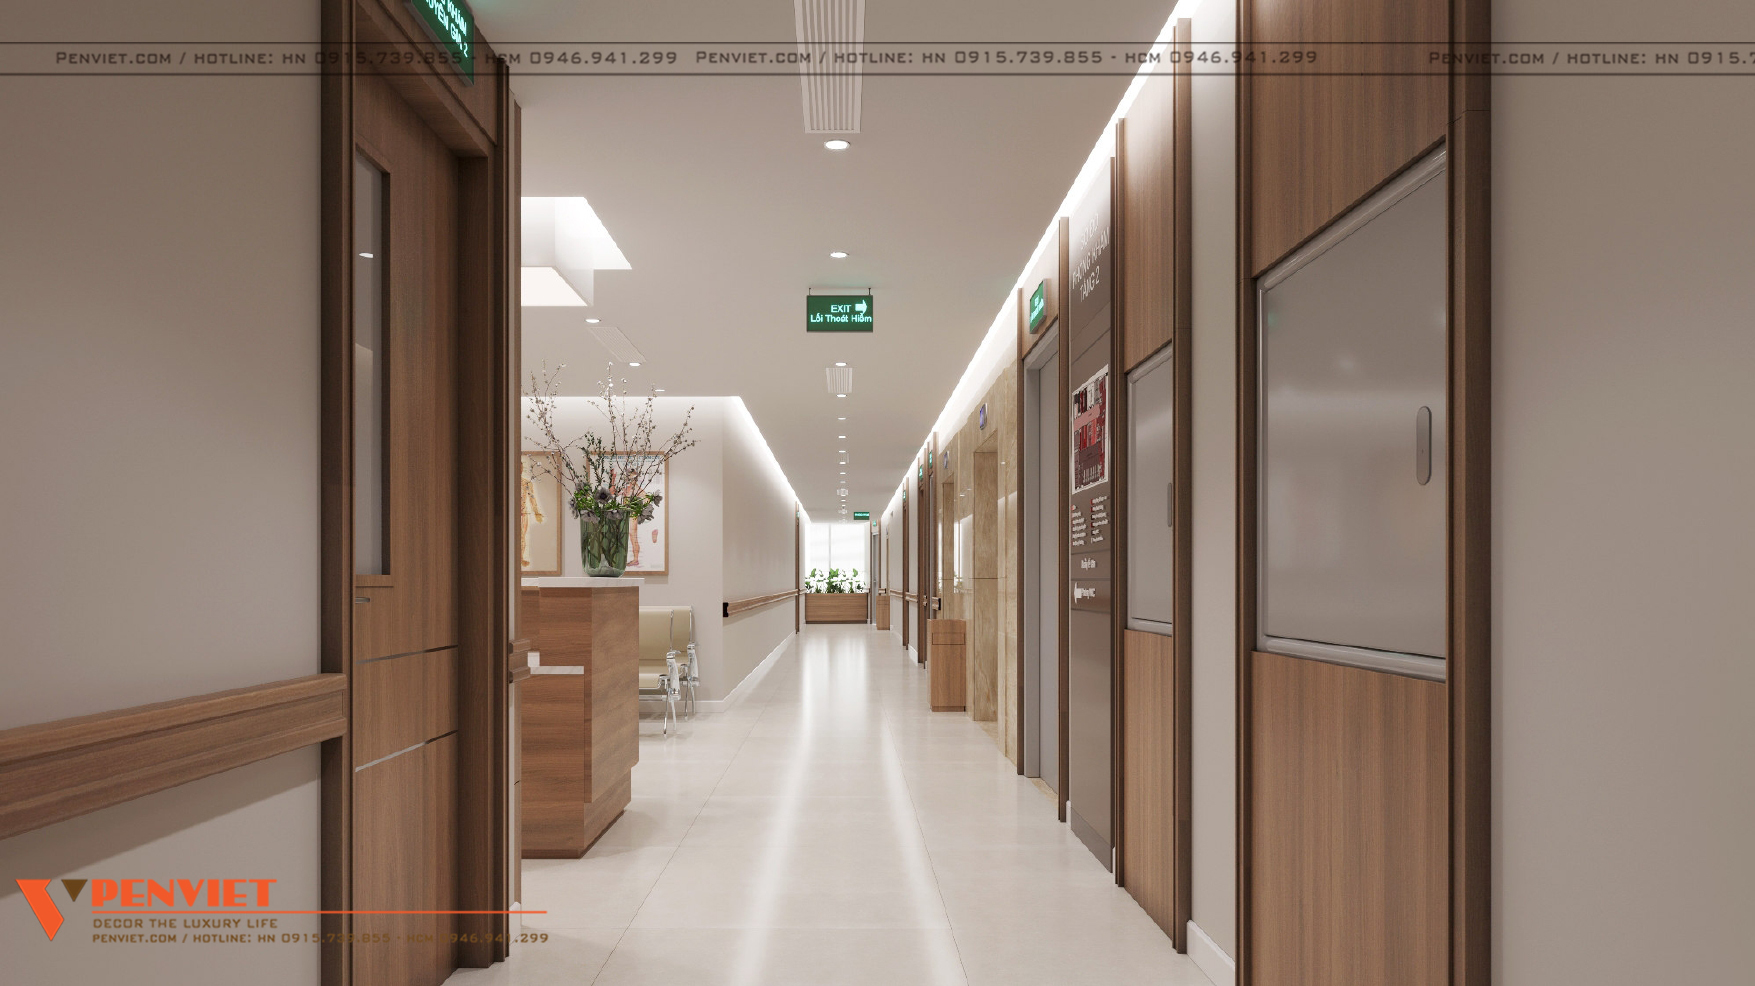 Thiết kế bệnh viện tổ hợp y học cổ truyền và chăm sóc sức khỏe chất lượng cao